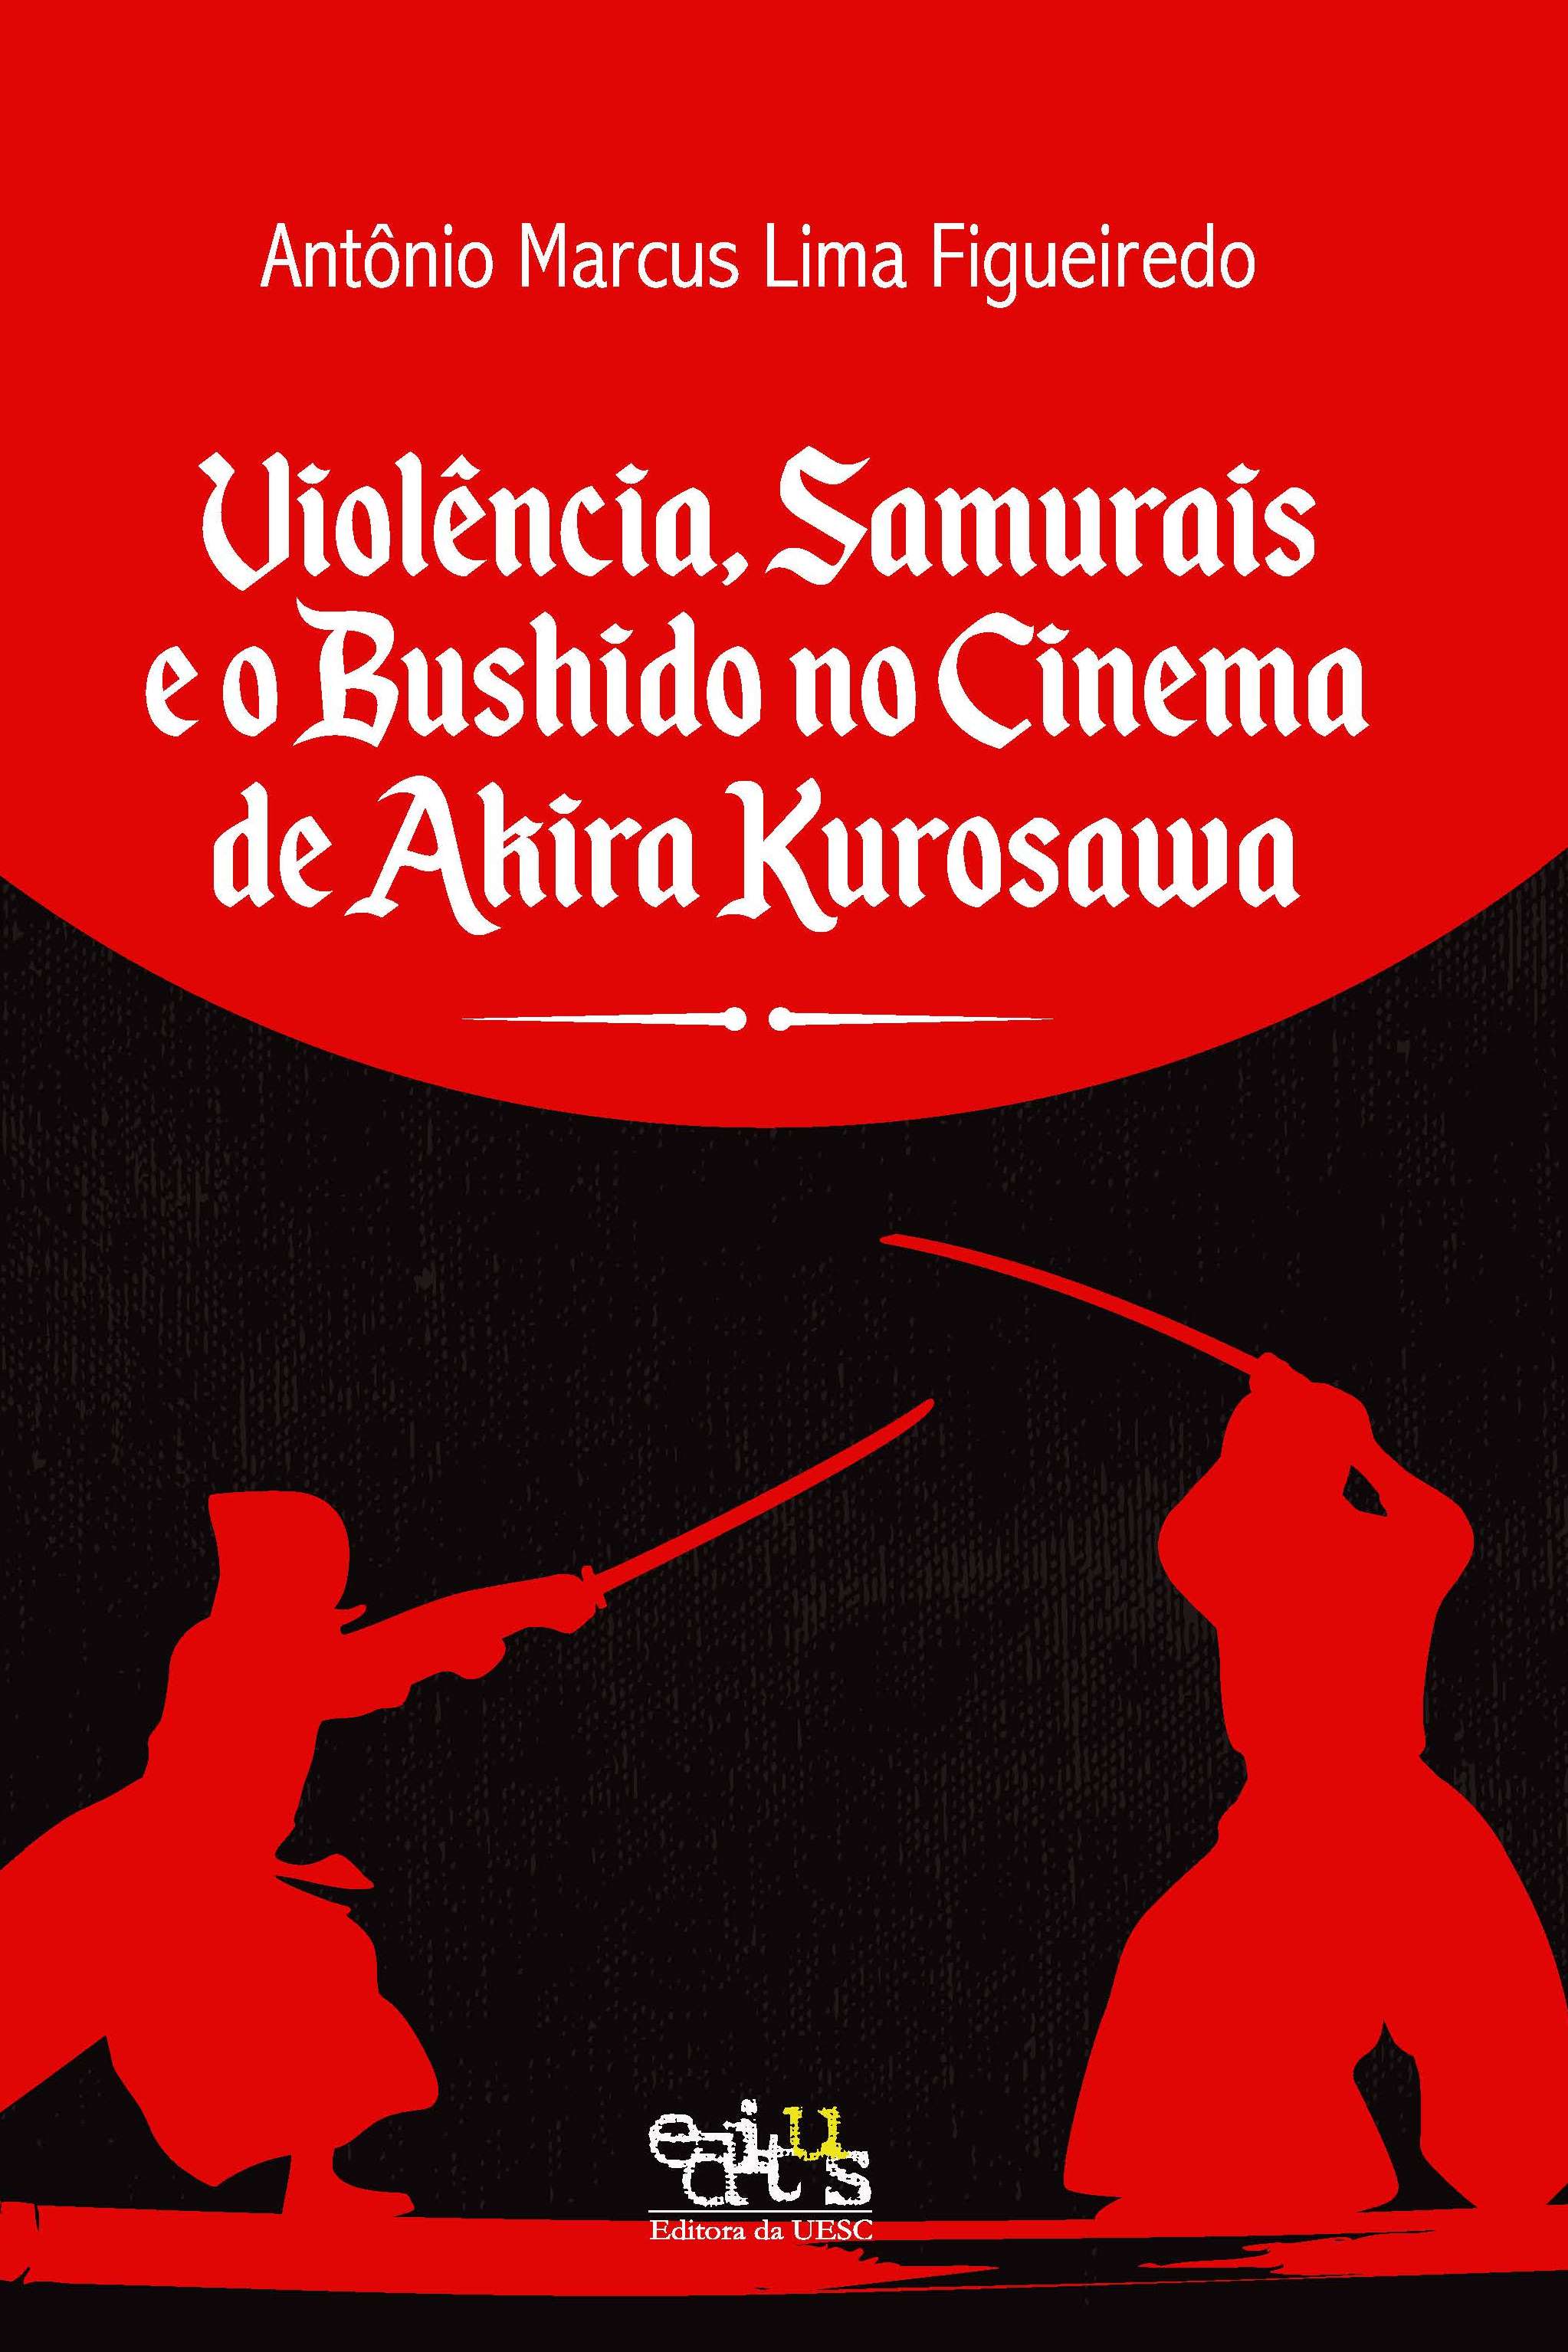 Violência, samurais e o bushido no cinema de Akira Kurosawa, livro de Antônio Marcus Lima Figueiredo